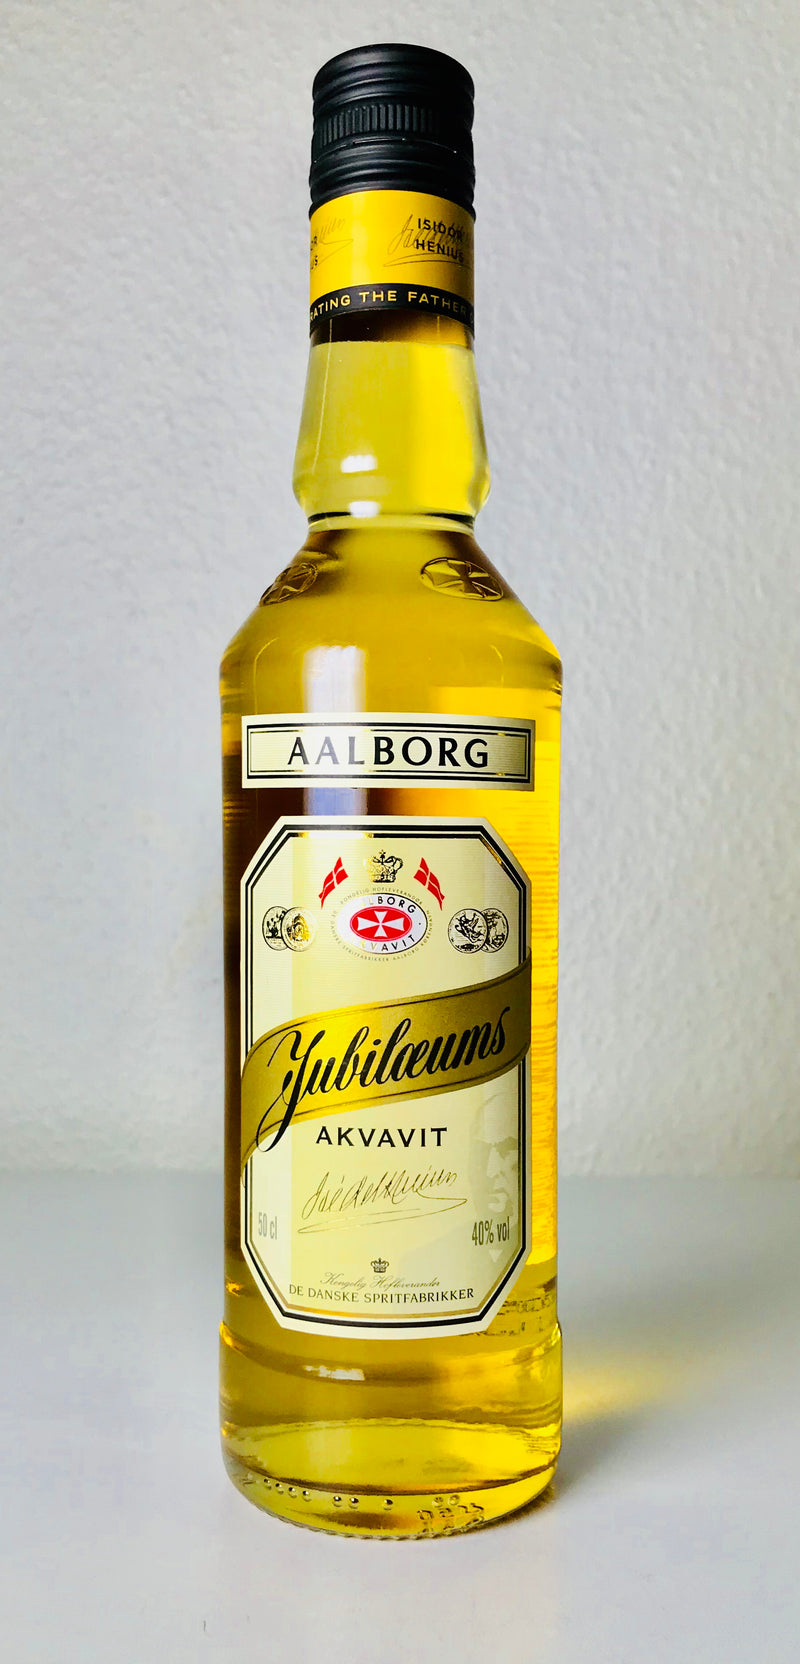 Aalborg Jubilæums Akvavit 40%, 50cl